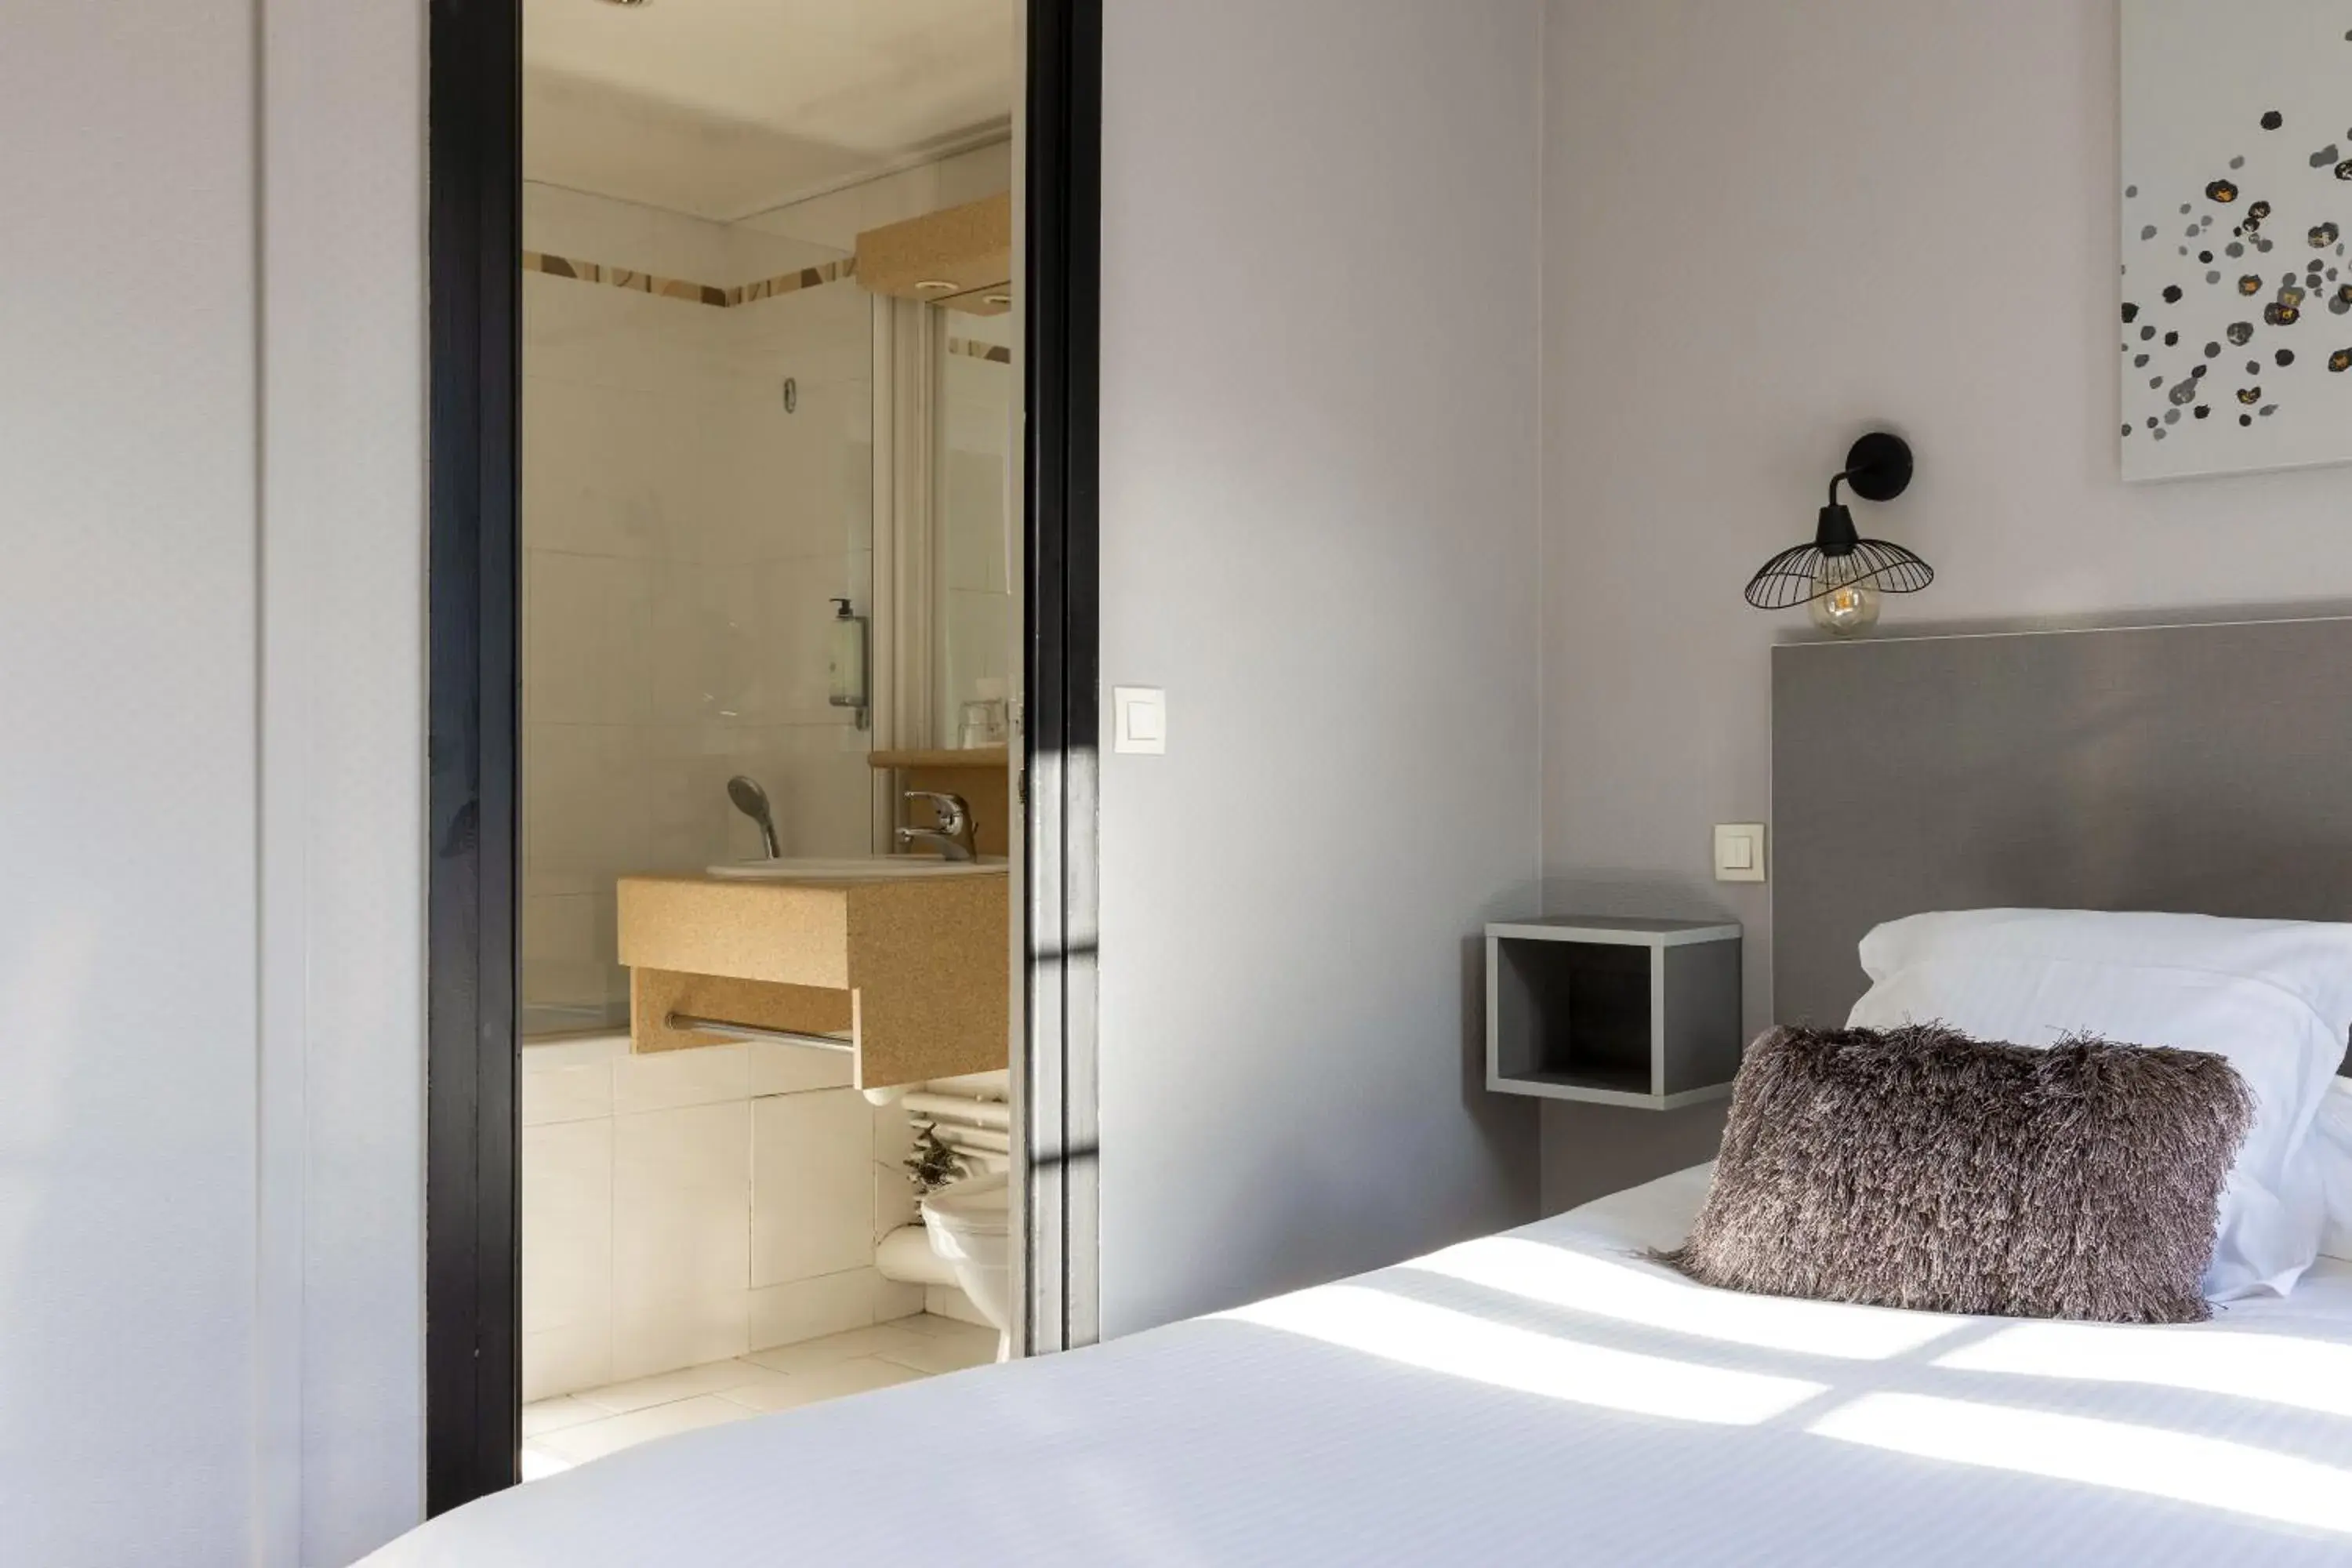 Bedroom, Bathroom in Hotel Le Dauphin Les Loges